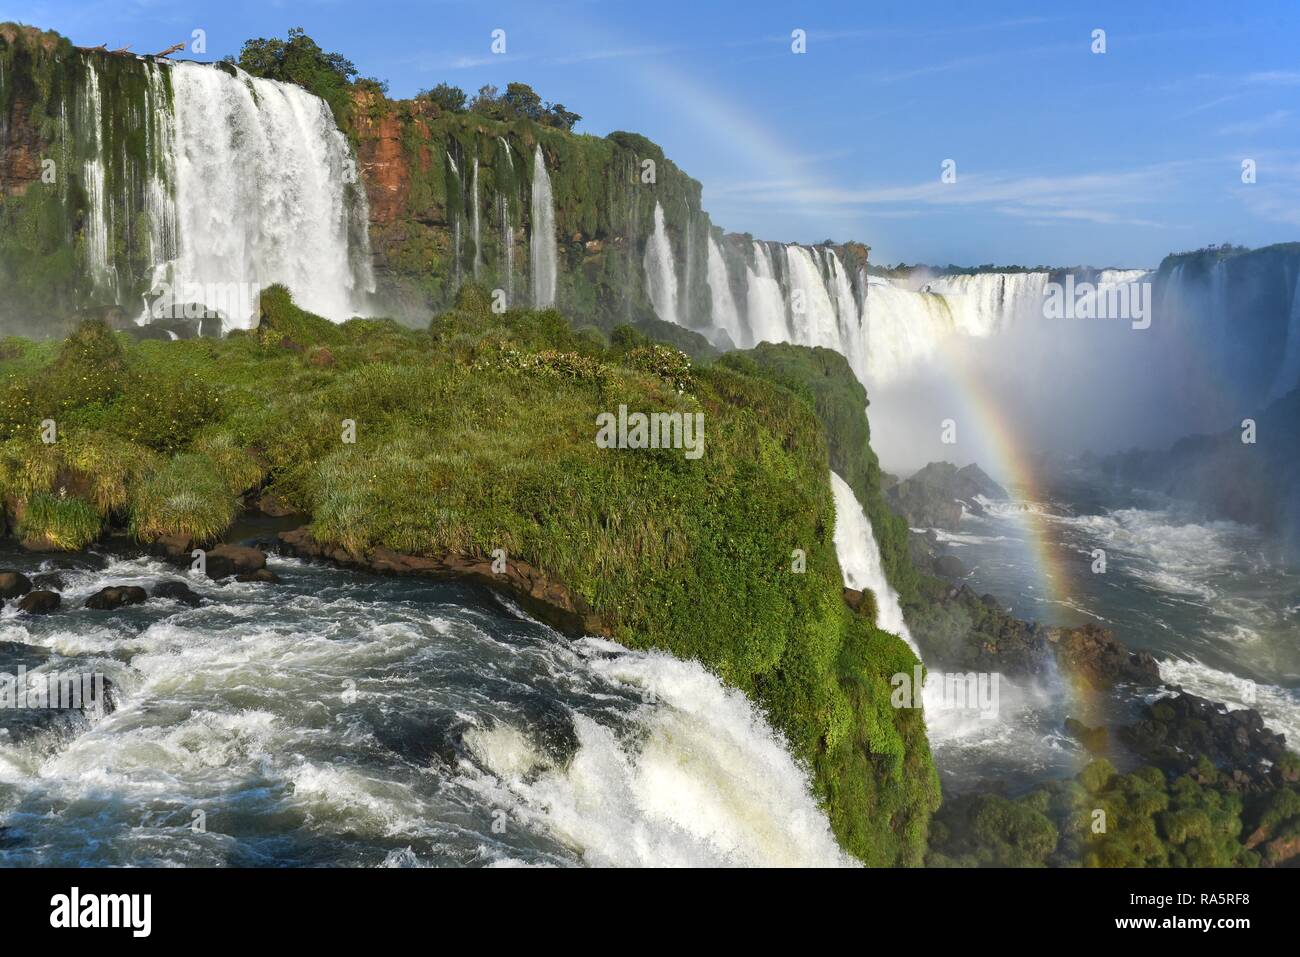 Vista desde el Salto Santa María hasta la Garganta del Diablo con arco iris, garganta del diablo, Cataratas del Iguazú, Puerto Iguazú, frontera entre Foto de stock